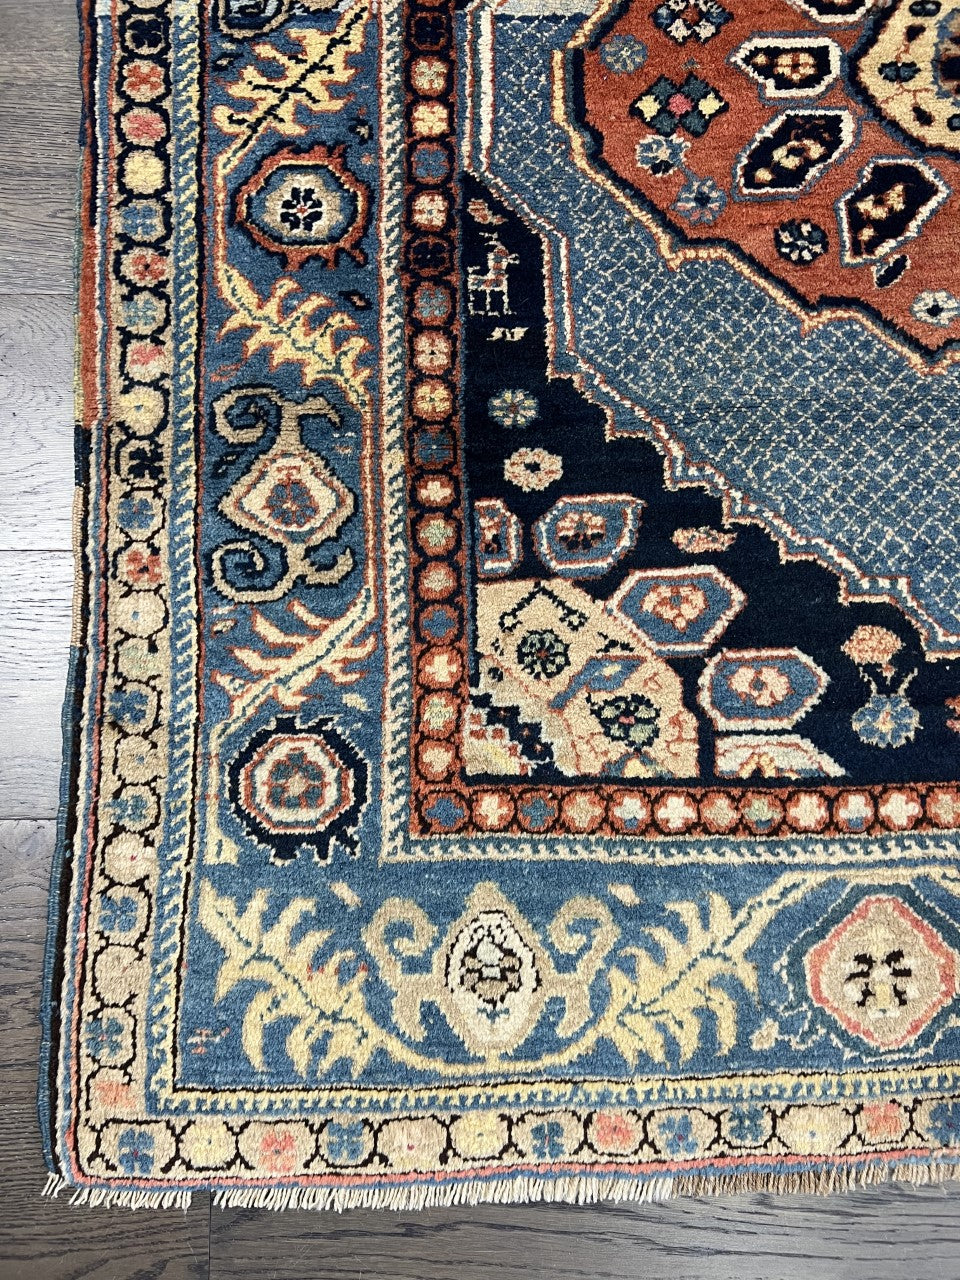 Old Antique Handmade Caucasian Karagha rug - Hakiemie Rug Gallery